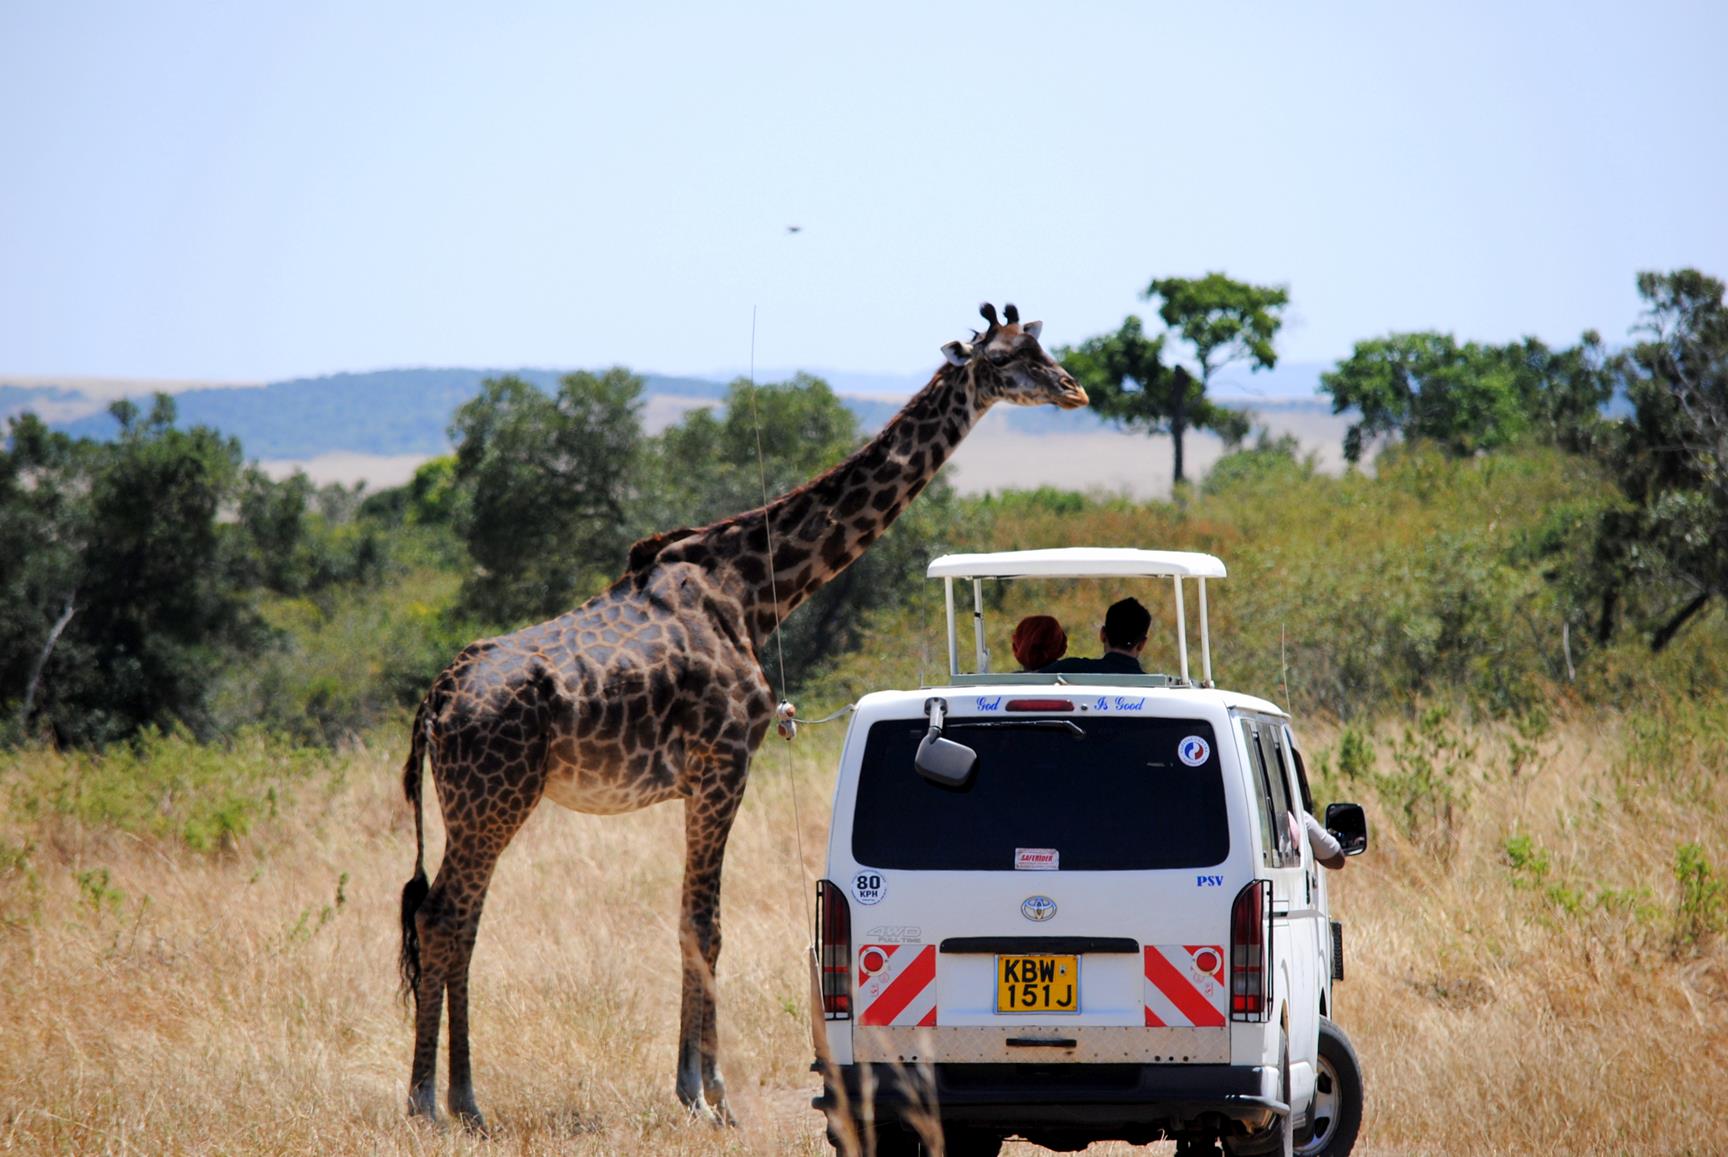 jirafas-safari-masai-mara